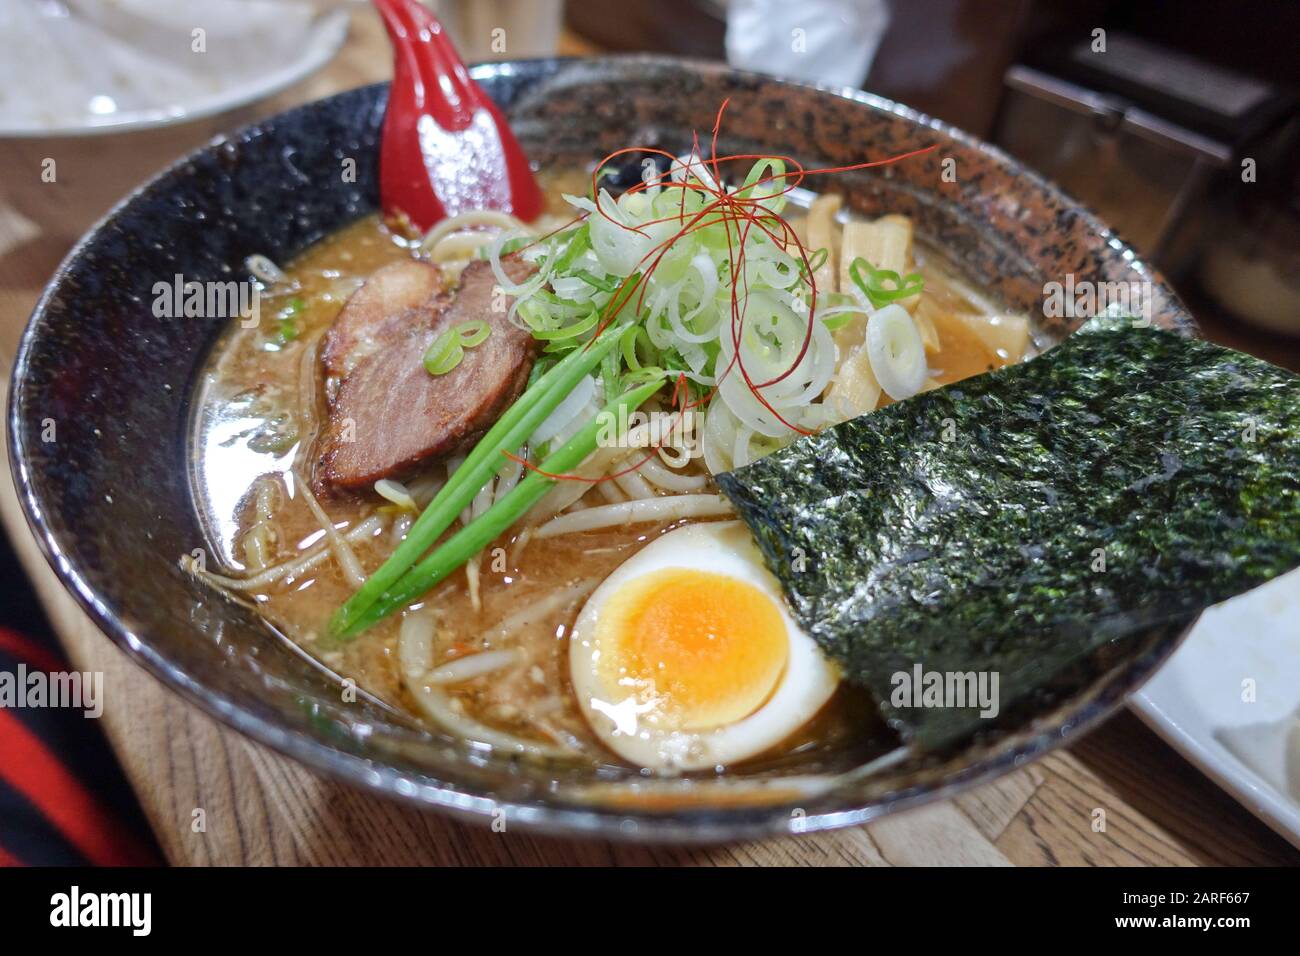 Il ramen è un piatto di noodle giapponese servito in un brodo a base di carne o pesce aromatizzato con salsa di soia o miso con maiale a fette e altri condimenti. Foto Stock